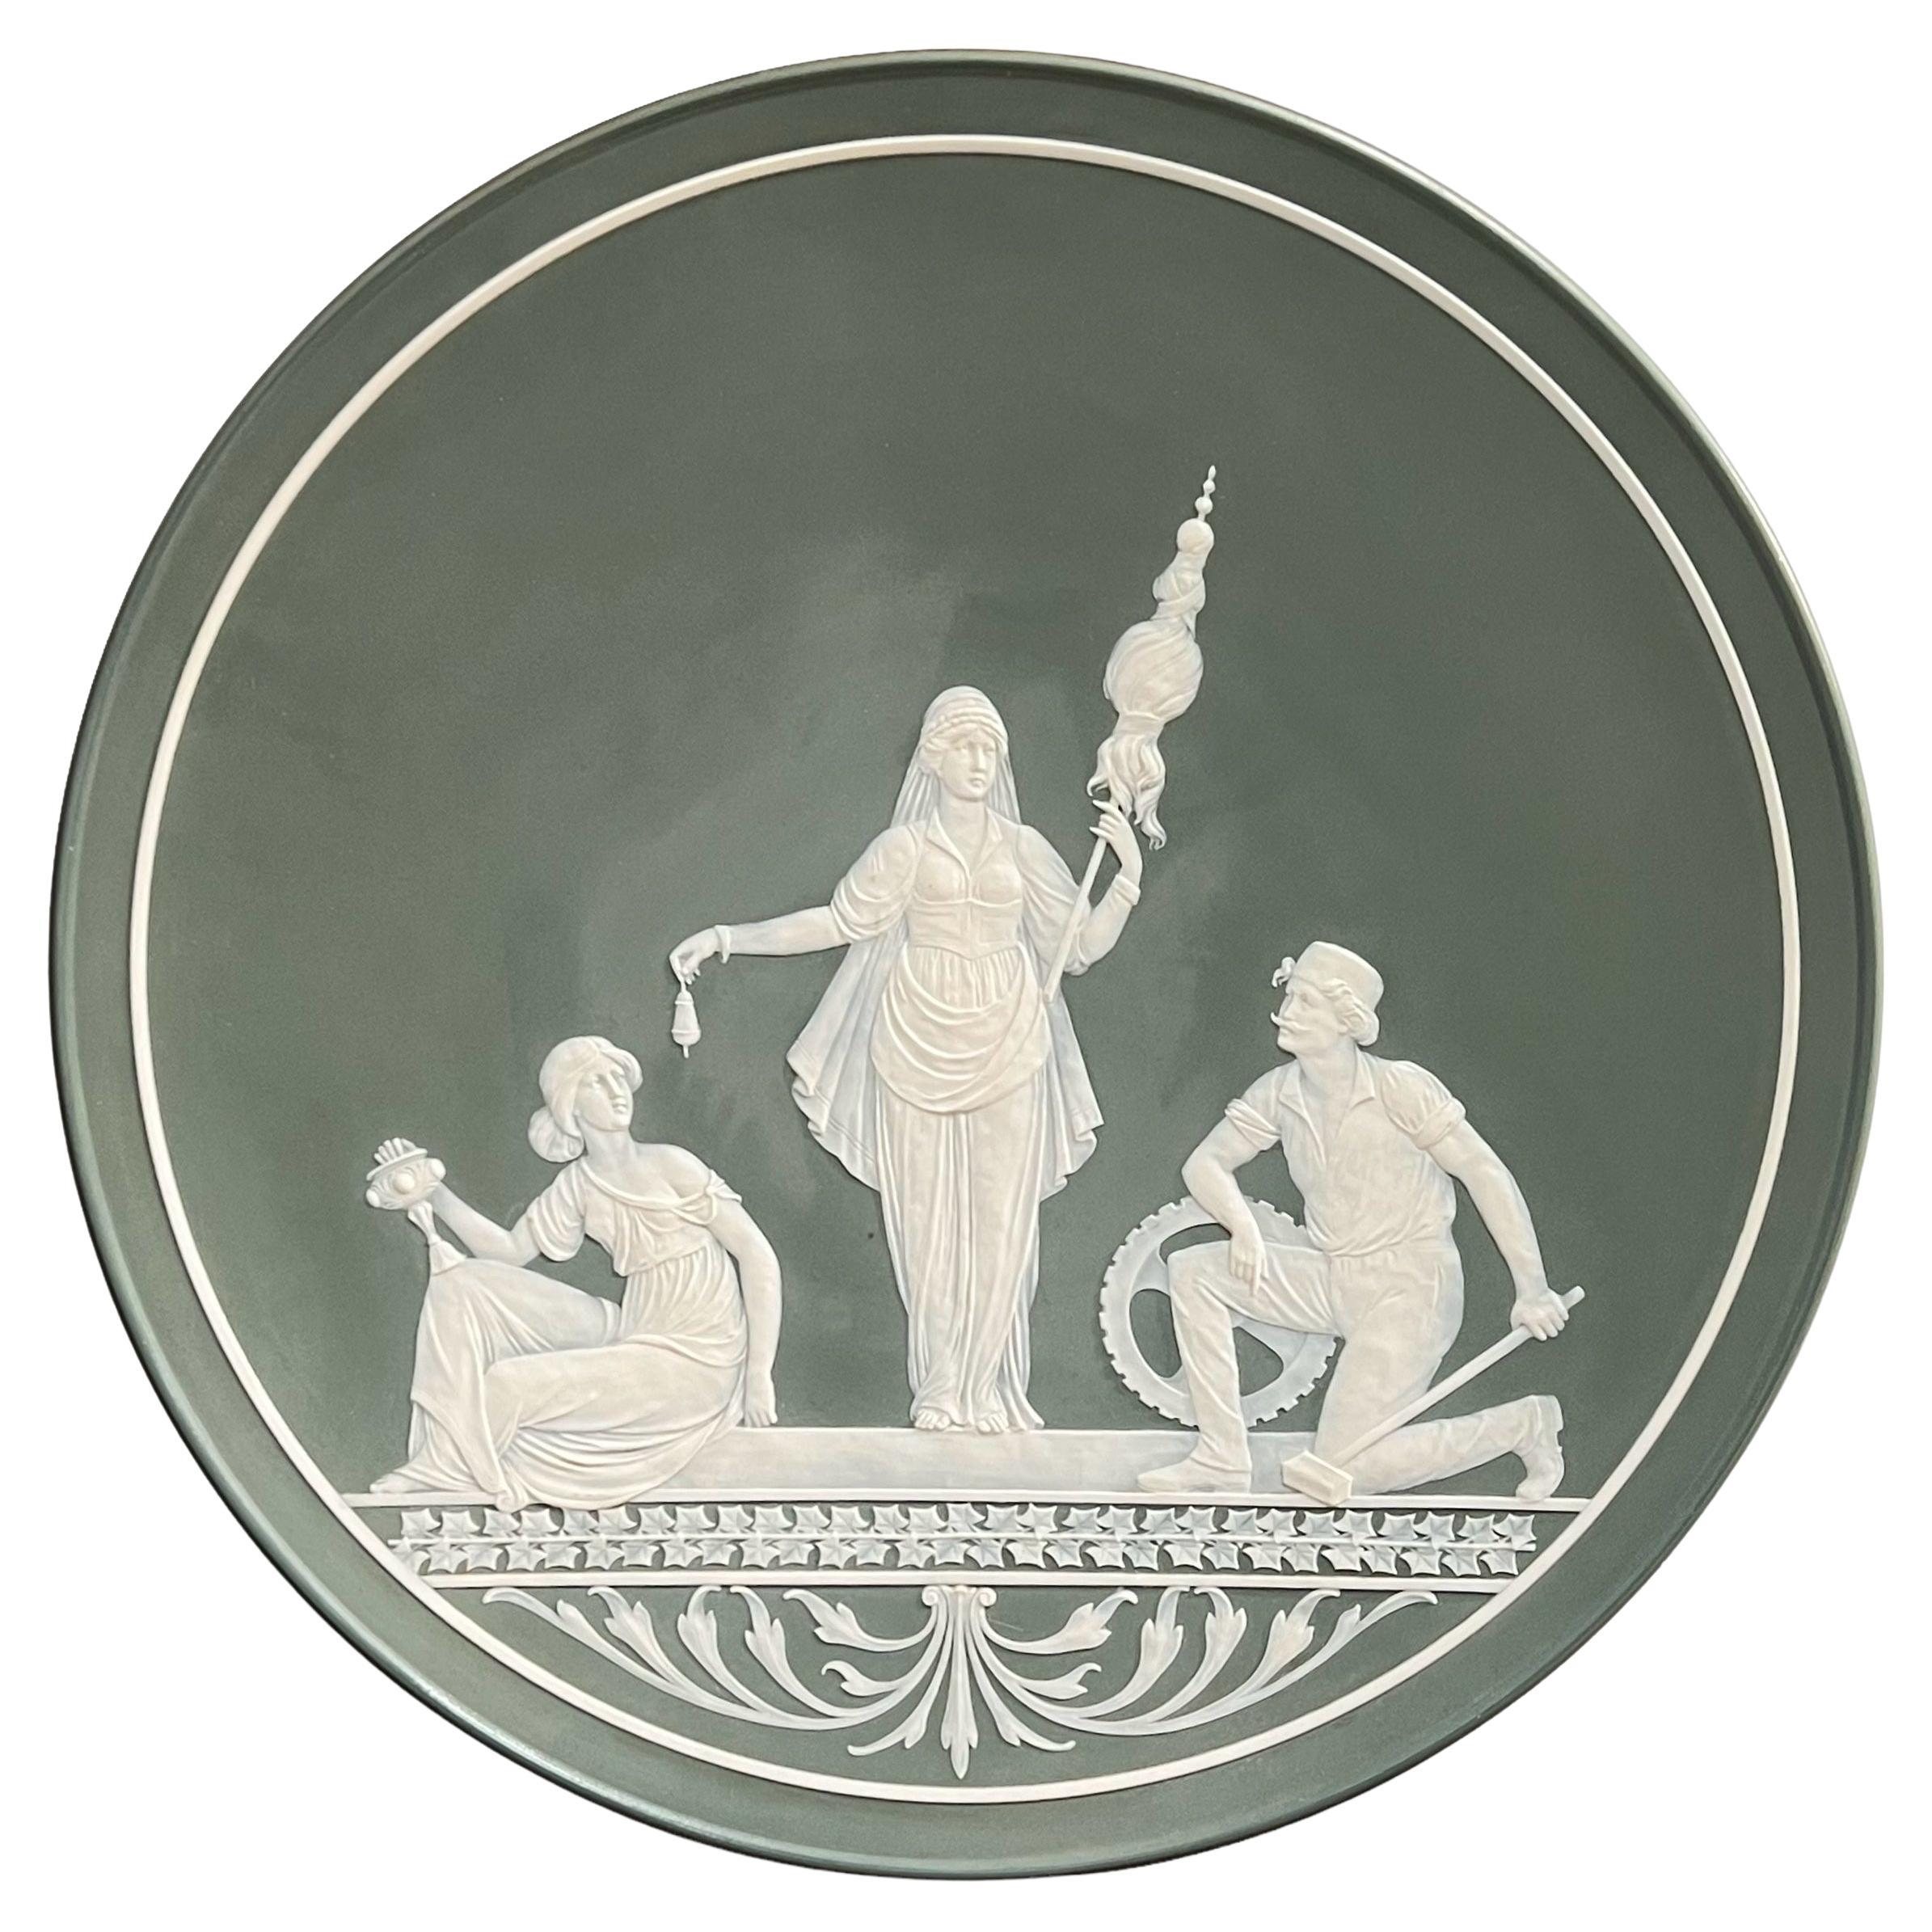 Chargeur Villeroy & Boch Mettlach en porcelaine Phanolith (similaire au Jasperware) représentant une déesse gréco-romaine et ses suivantes en porcelaine blanche sur un fond vert forêt.  En très bon état.